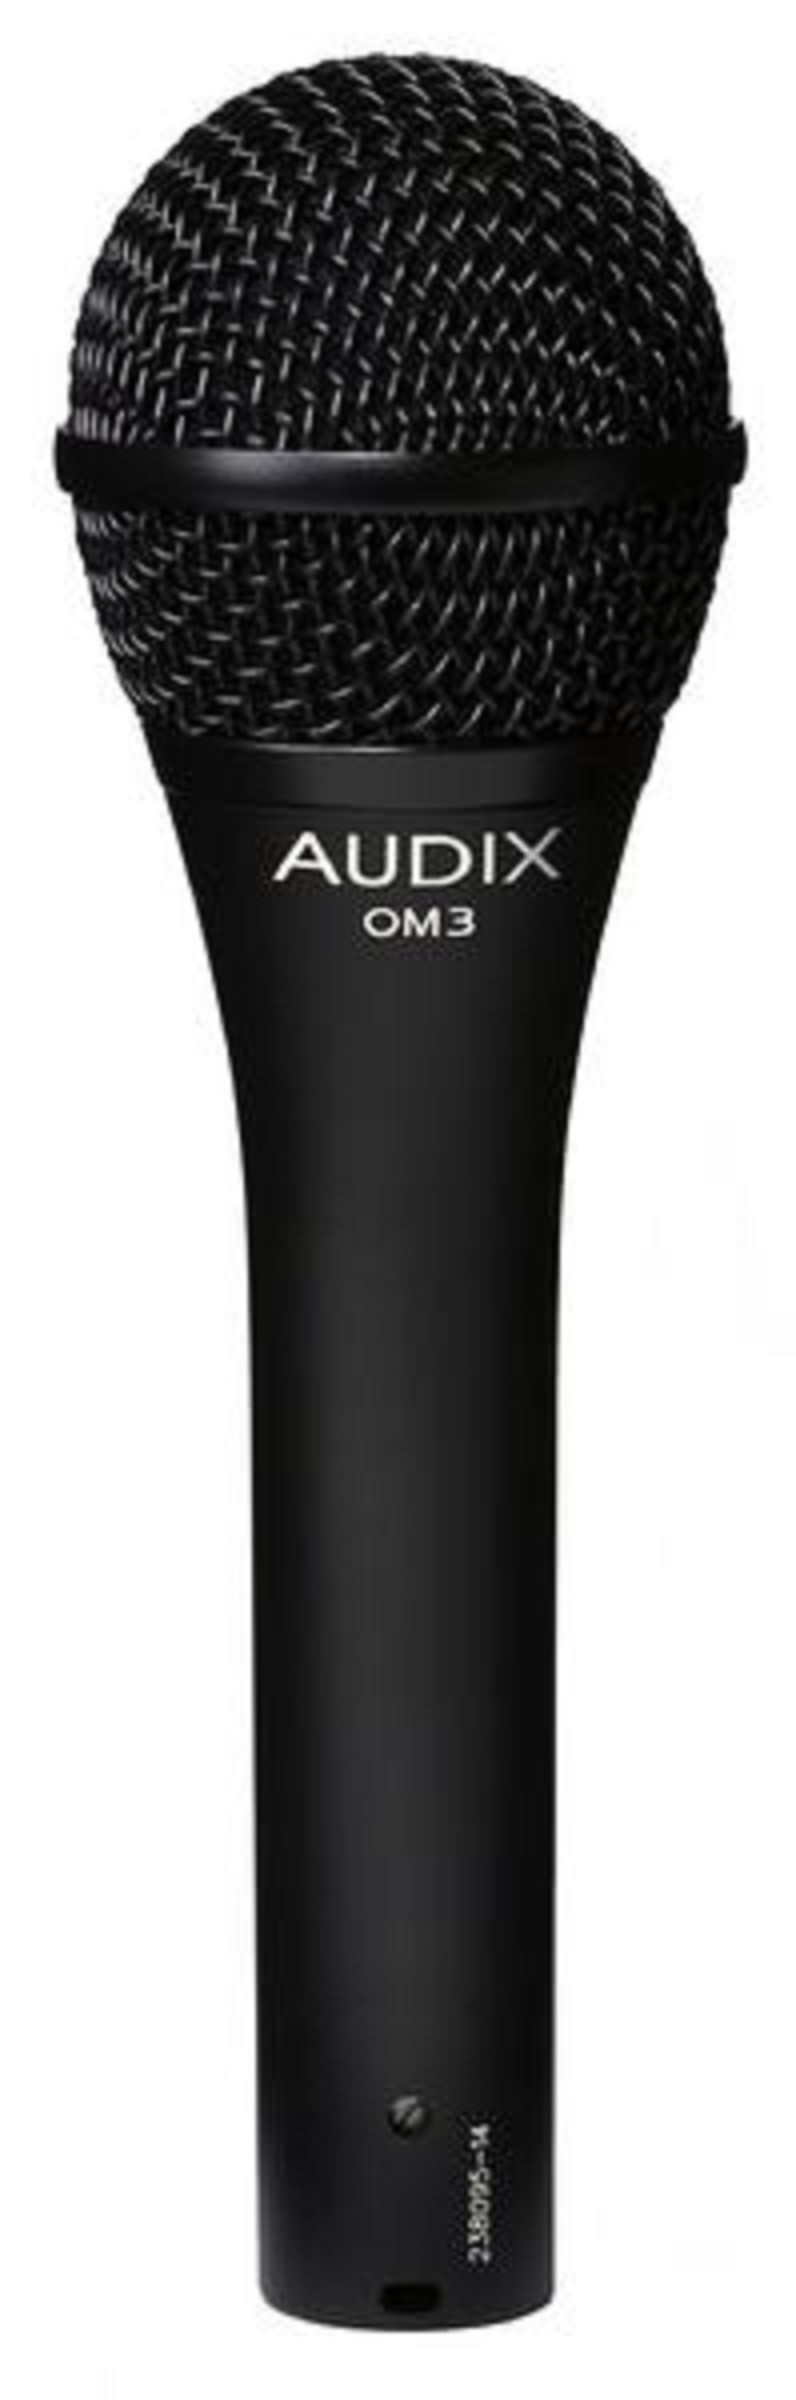 Audix OM3 Gesangsmikrofon